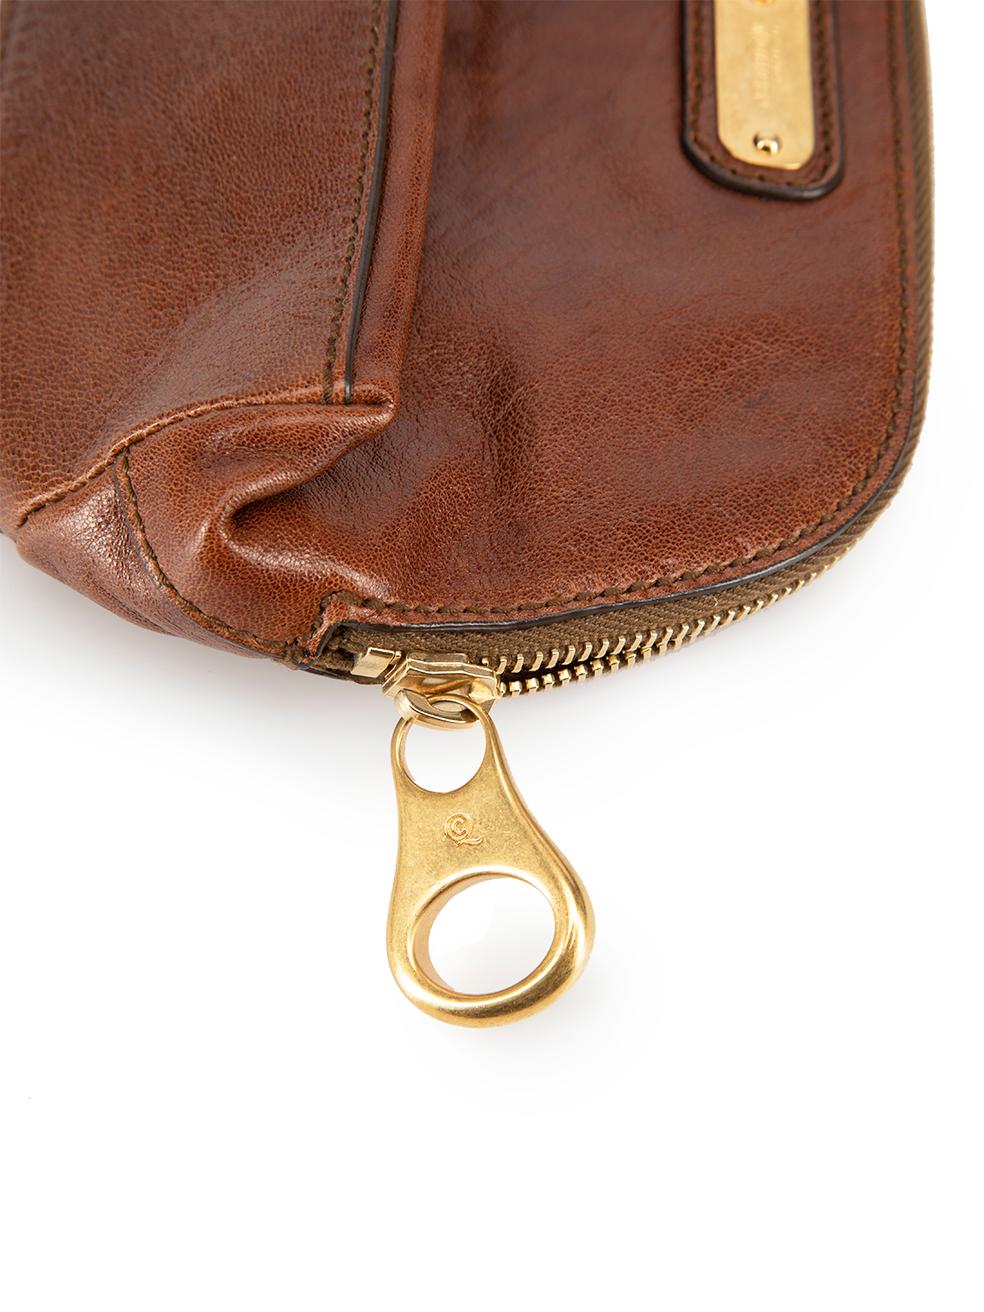 Alexander McQueen Women's Brown Leather Cosmetic Bag 2